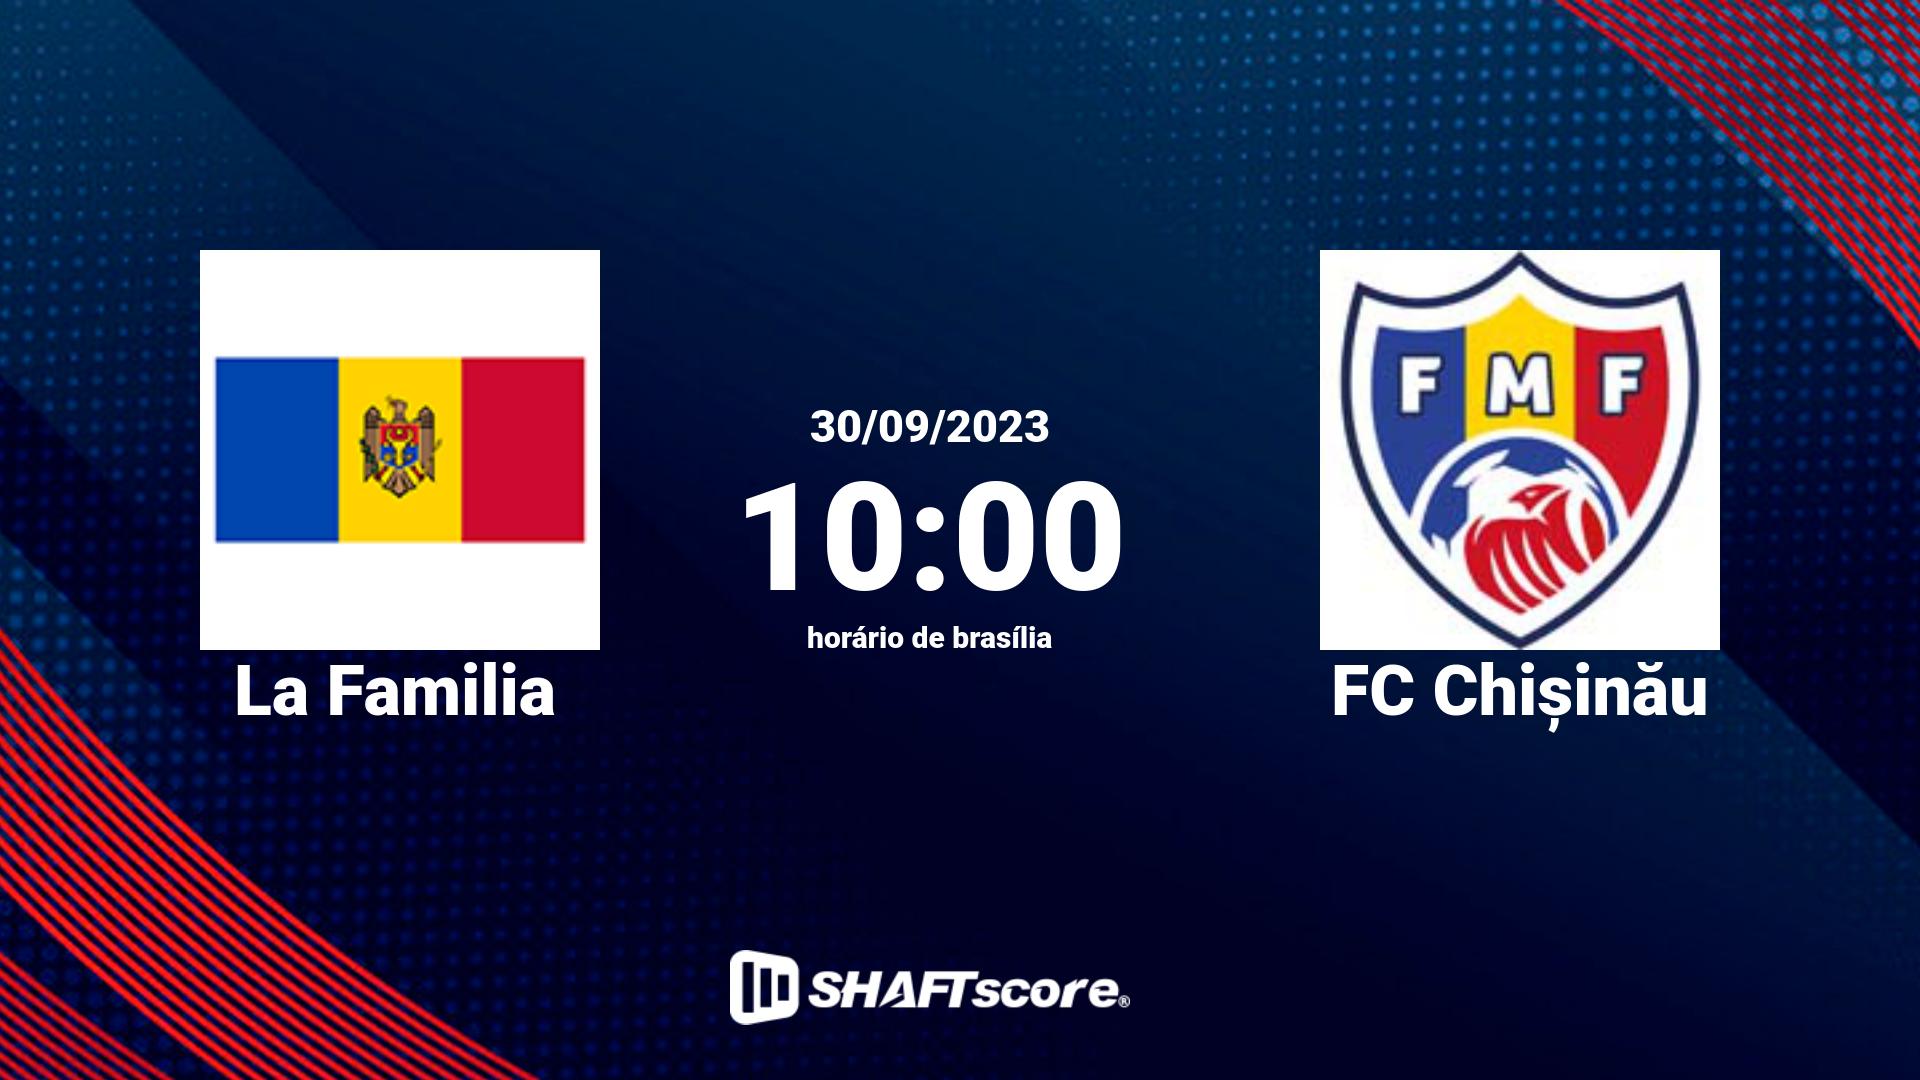 Estatísticas do jogo La Familia vs FC Chișinău 30.09 10:00